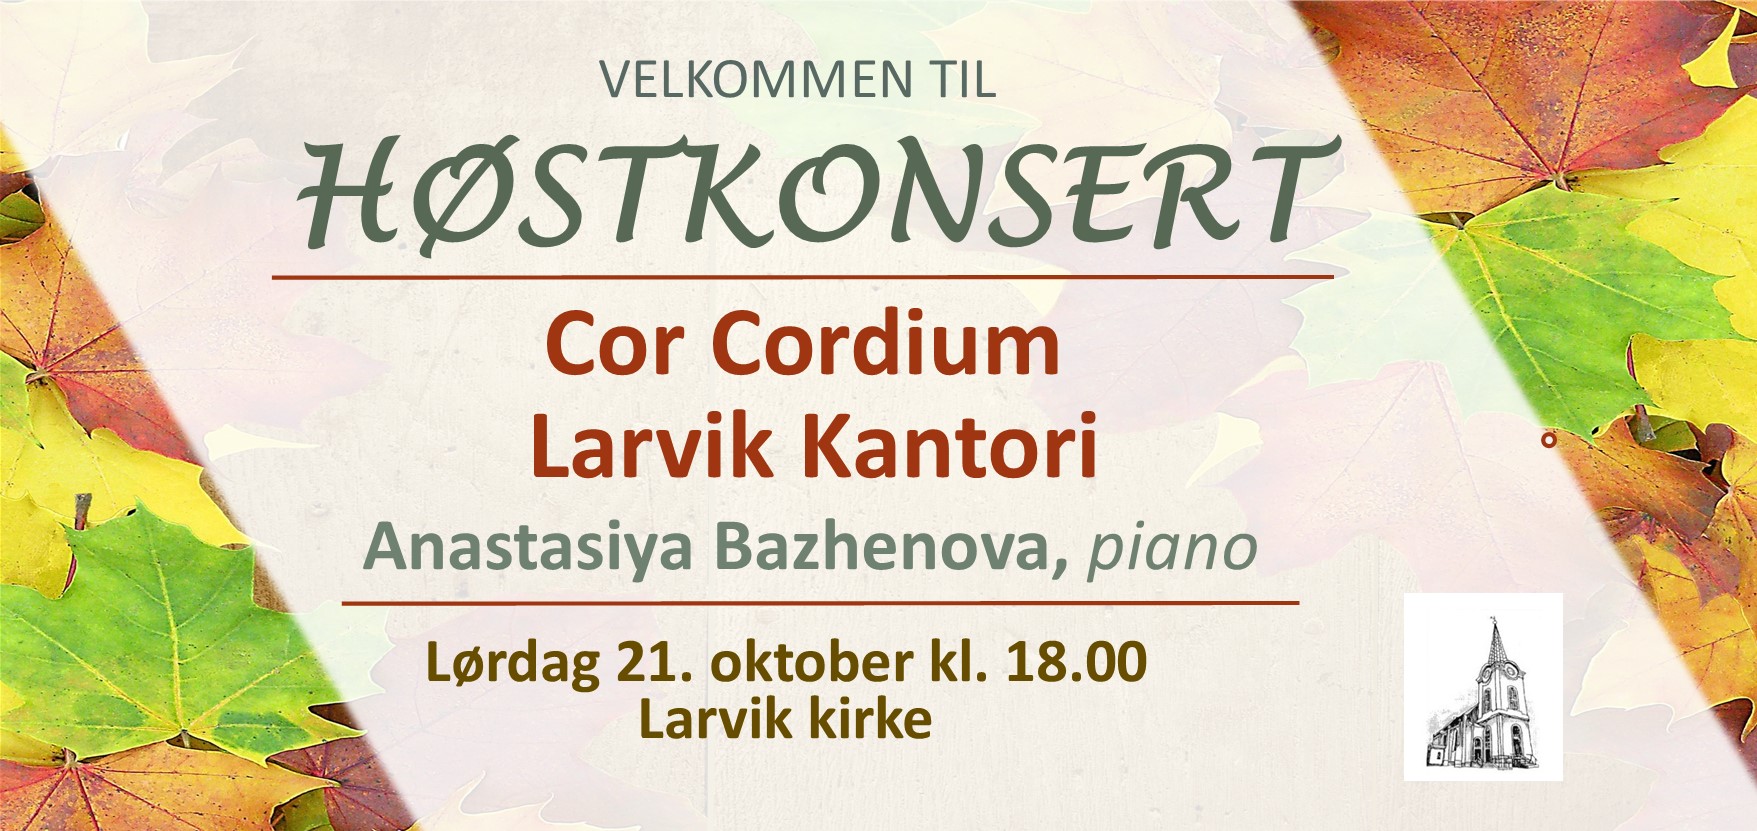 Velkommen til konsert i Larvik kirke 21. oktober.